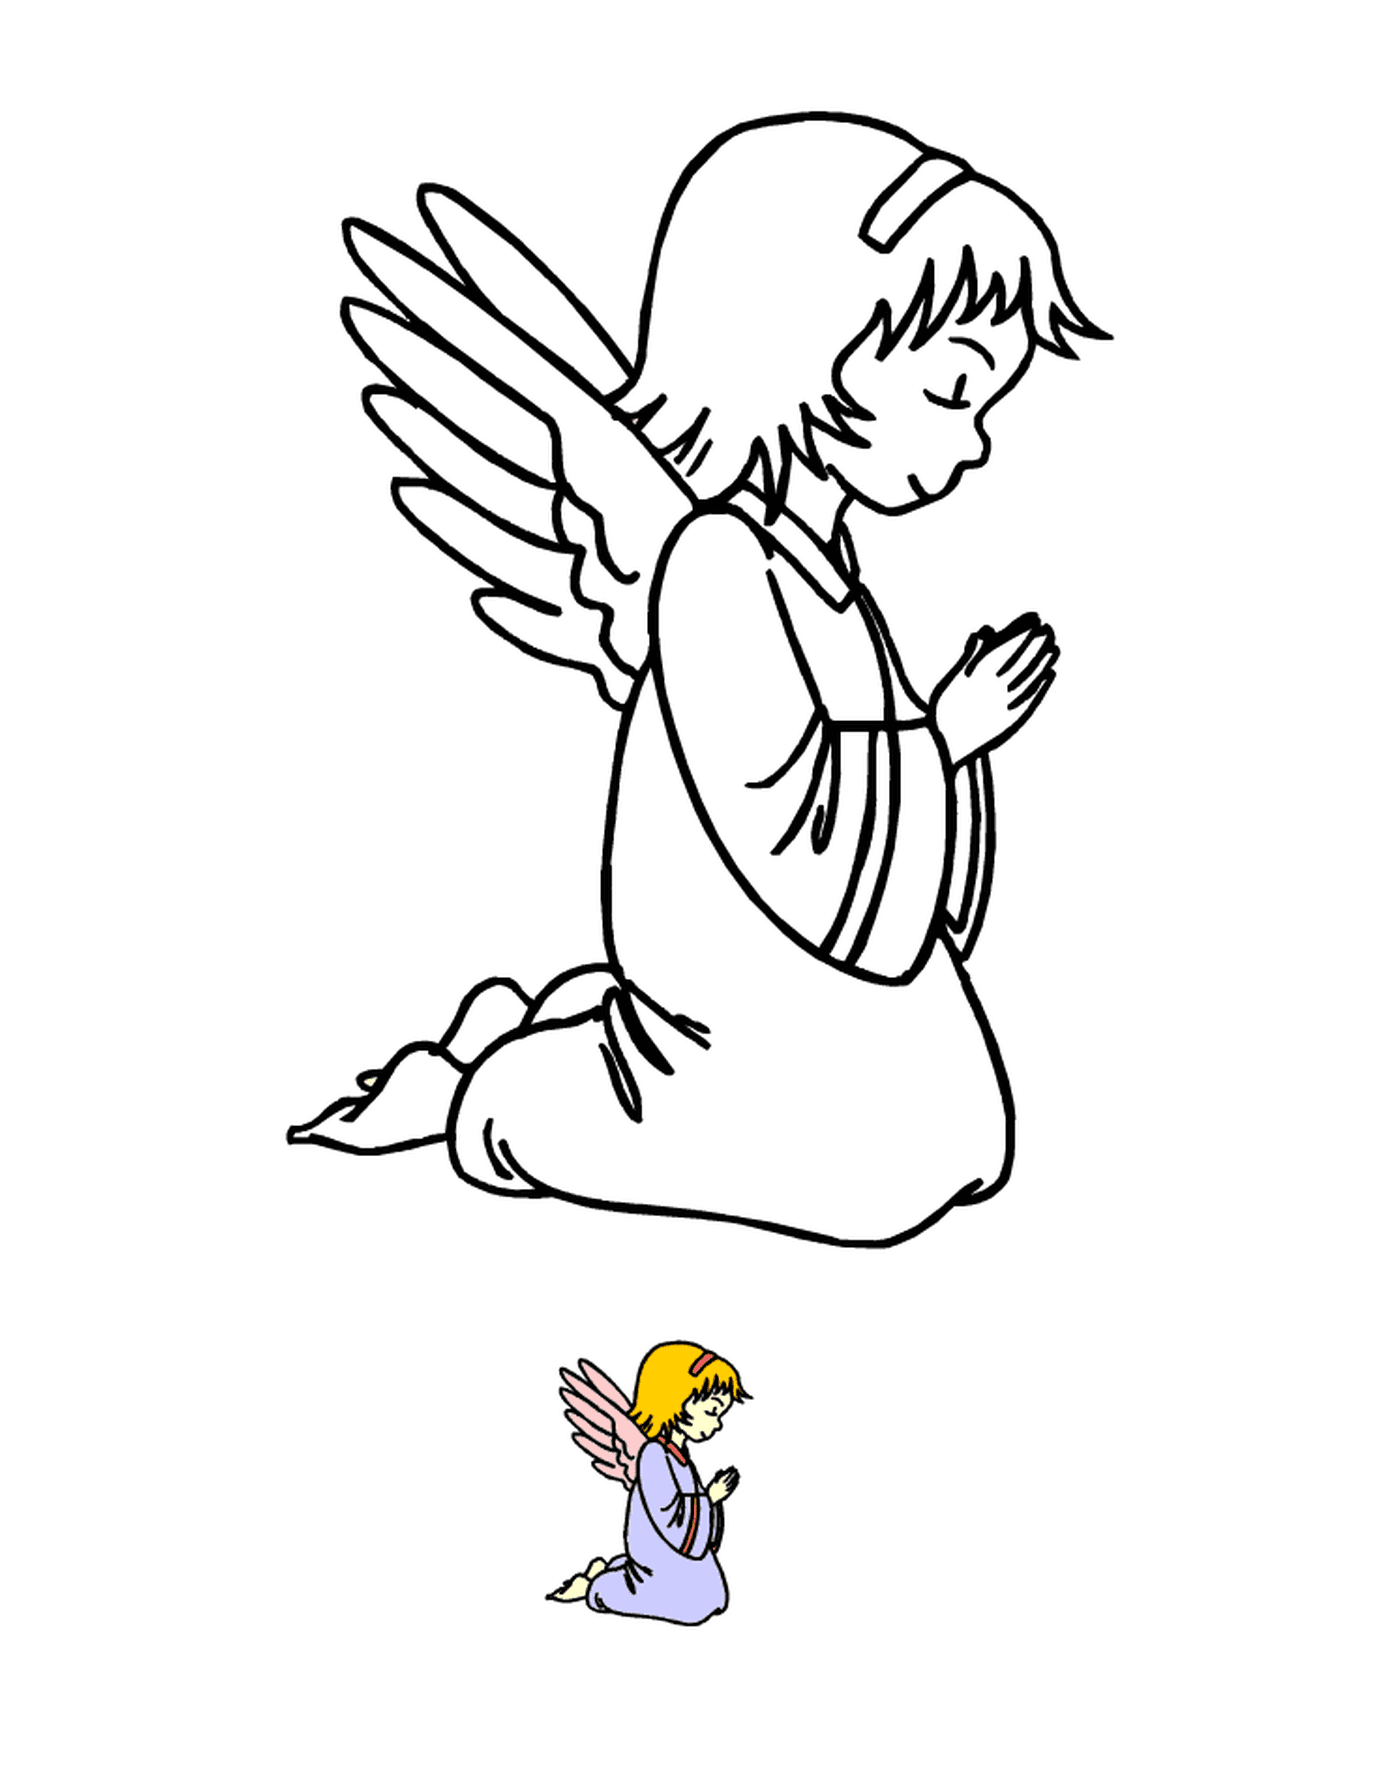  Ангел, стоявший на коленях в молитве с птицей рядом 